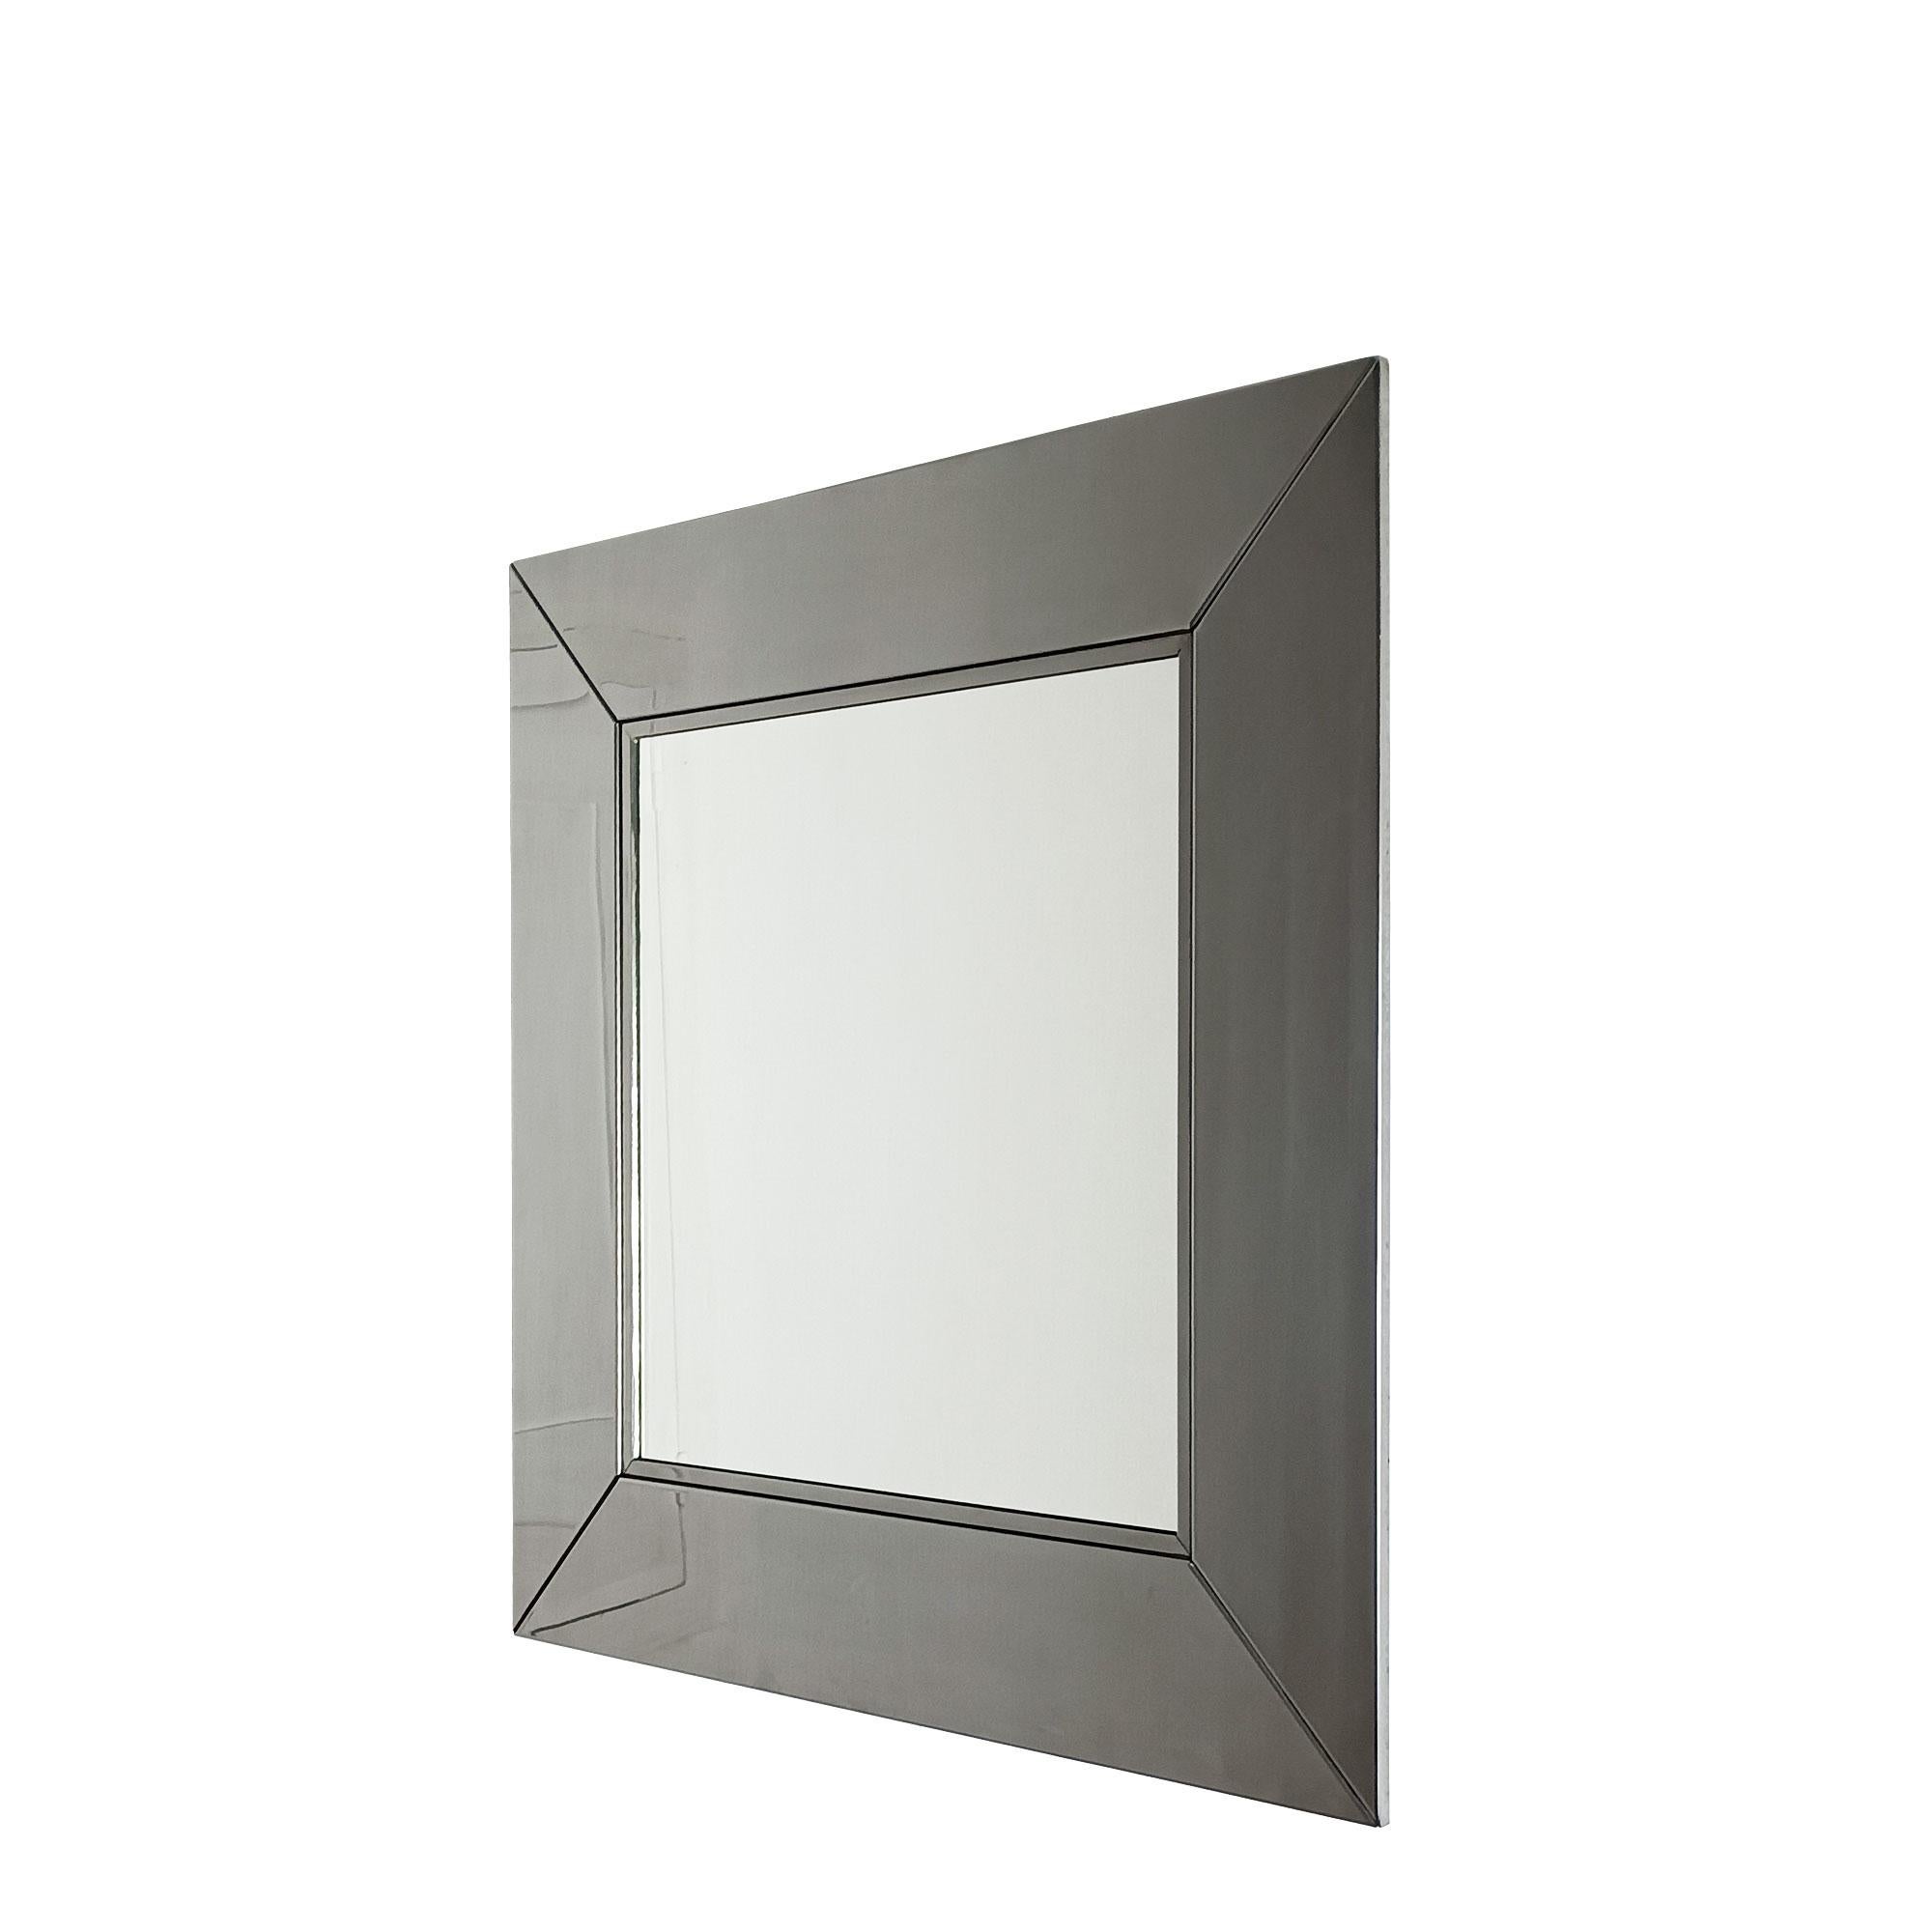 Spiegel mit verchromtem Metallrahmen. Sehr hohe Qualität.
Entwurf von Giorgio Cattelan für Cidue.
Italien um 1970